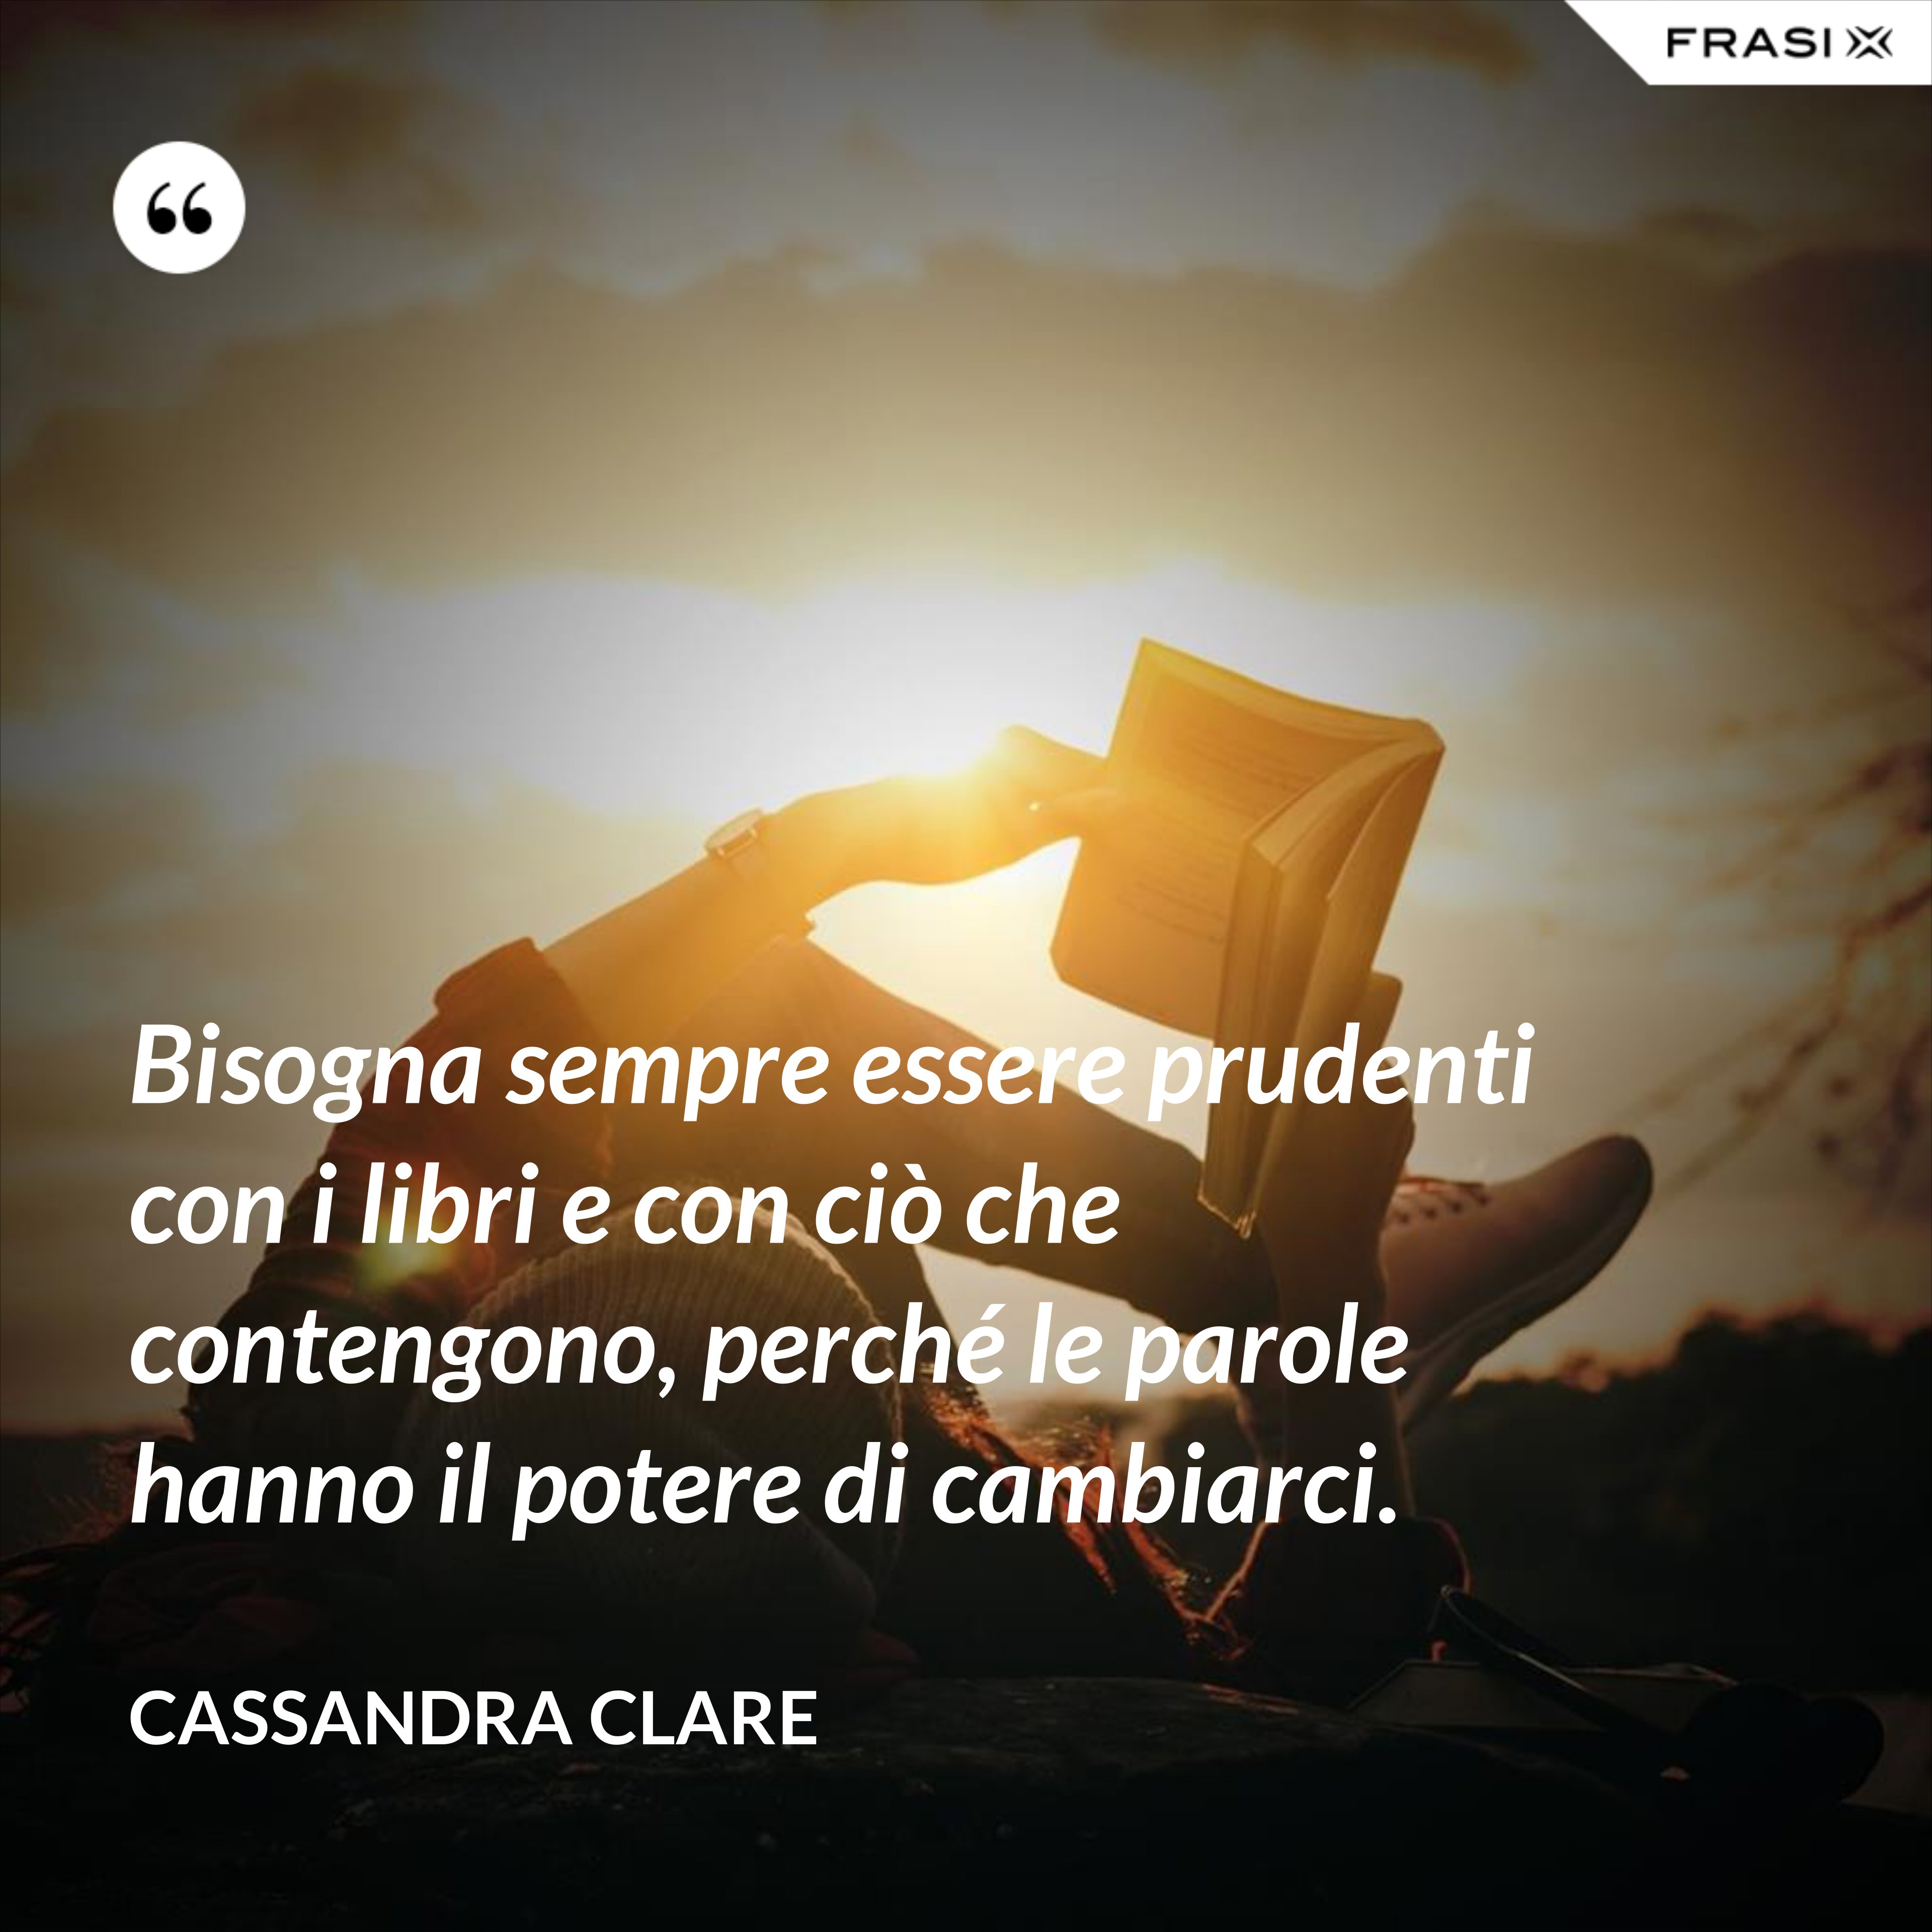 Bisogna sempre essere prudenti con i libri e con ciò che contengono, perché le parole hanno il potere di cambiarci. - Cassandra Clare